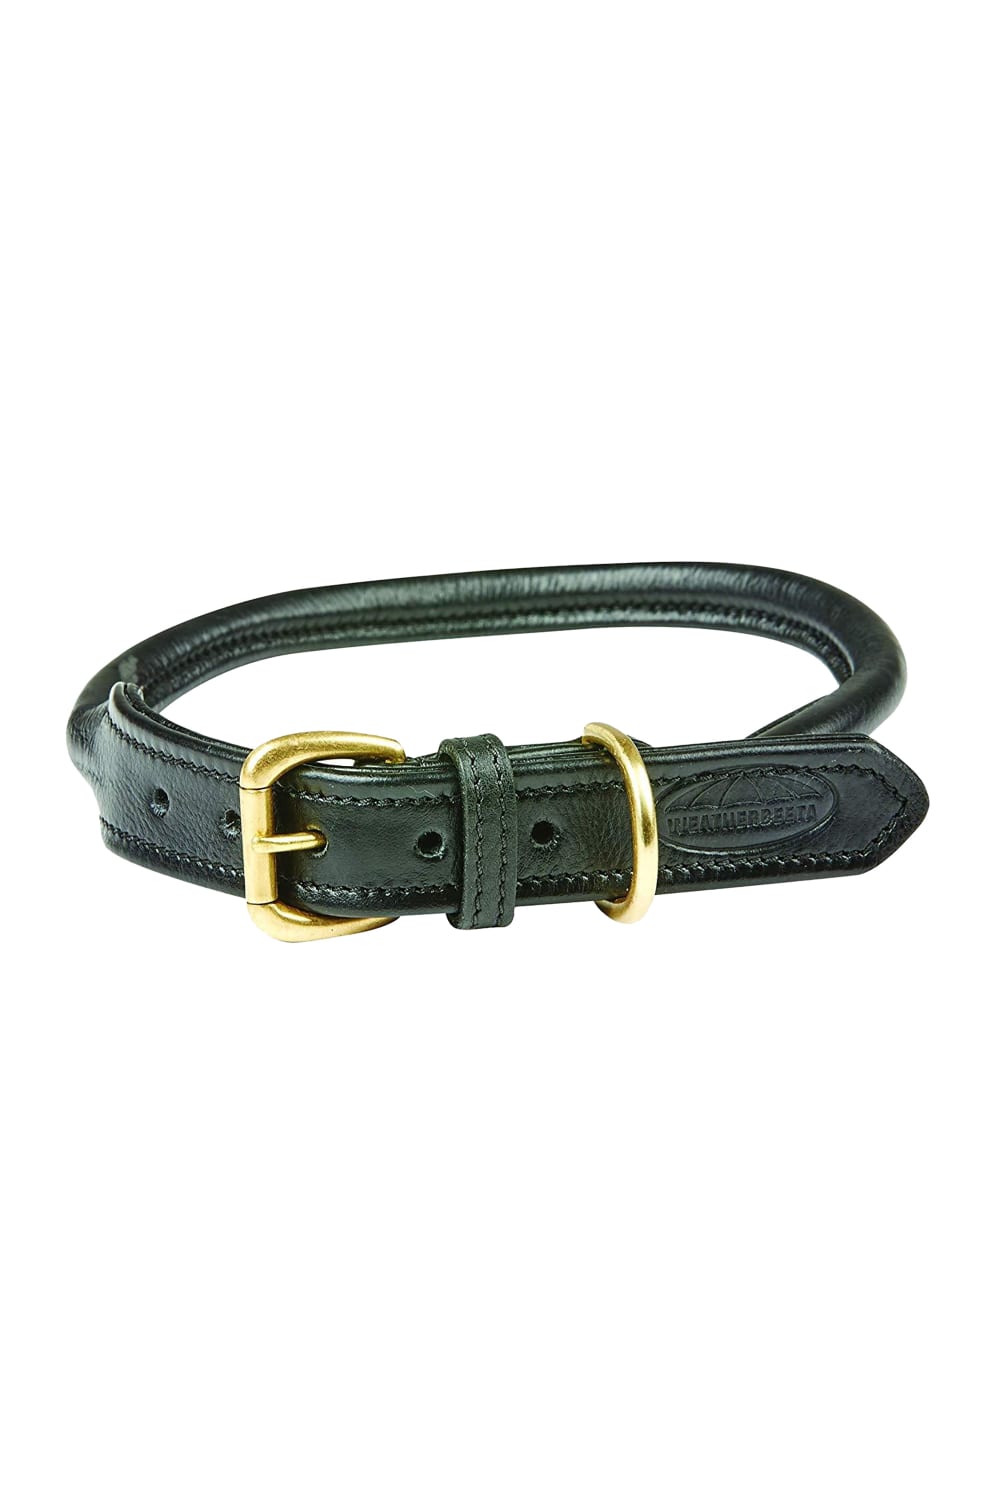 Weatherbeeta Rolled Leather Dog Collar (Black) (XS)